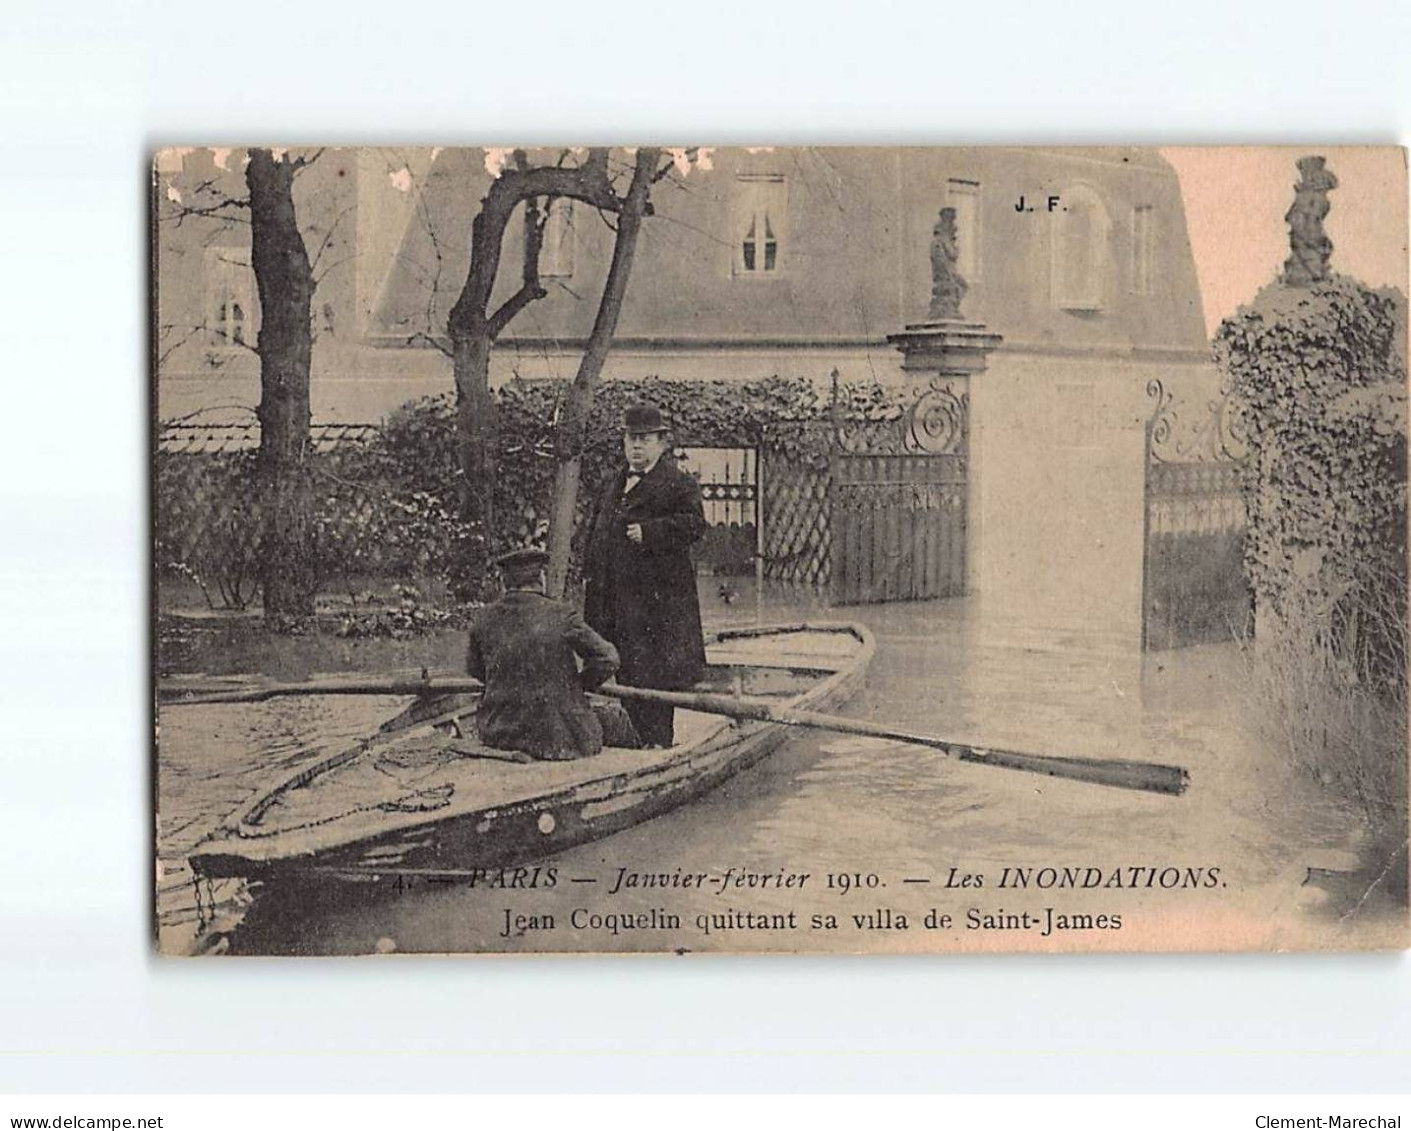 PARIS: Inondations 1910, Jean Coquelin Quittant Sa Villa De Saint-James - état - Paris Flood, 1910